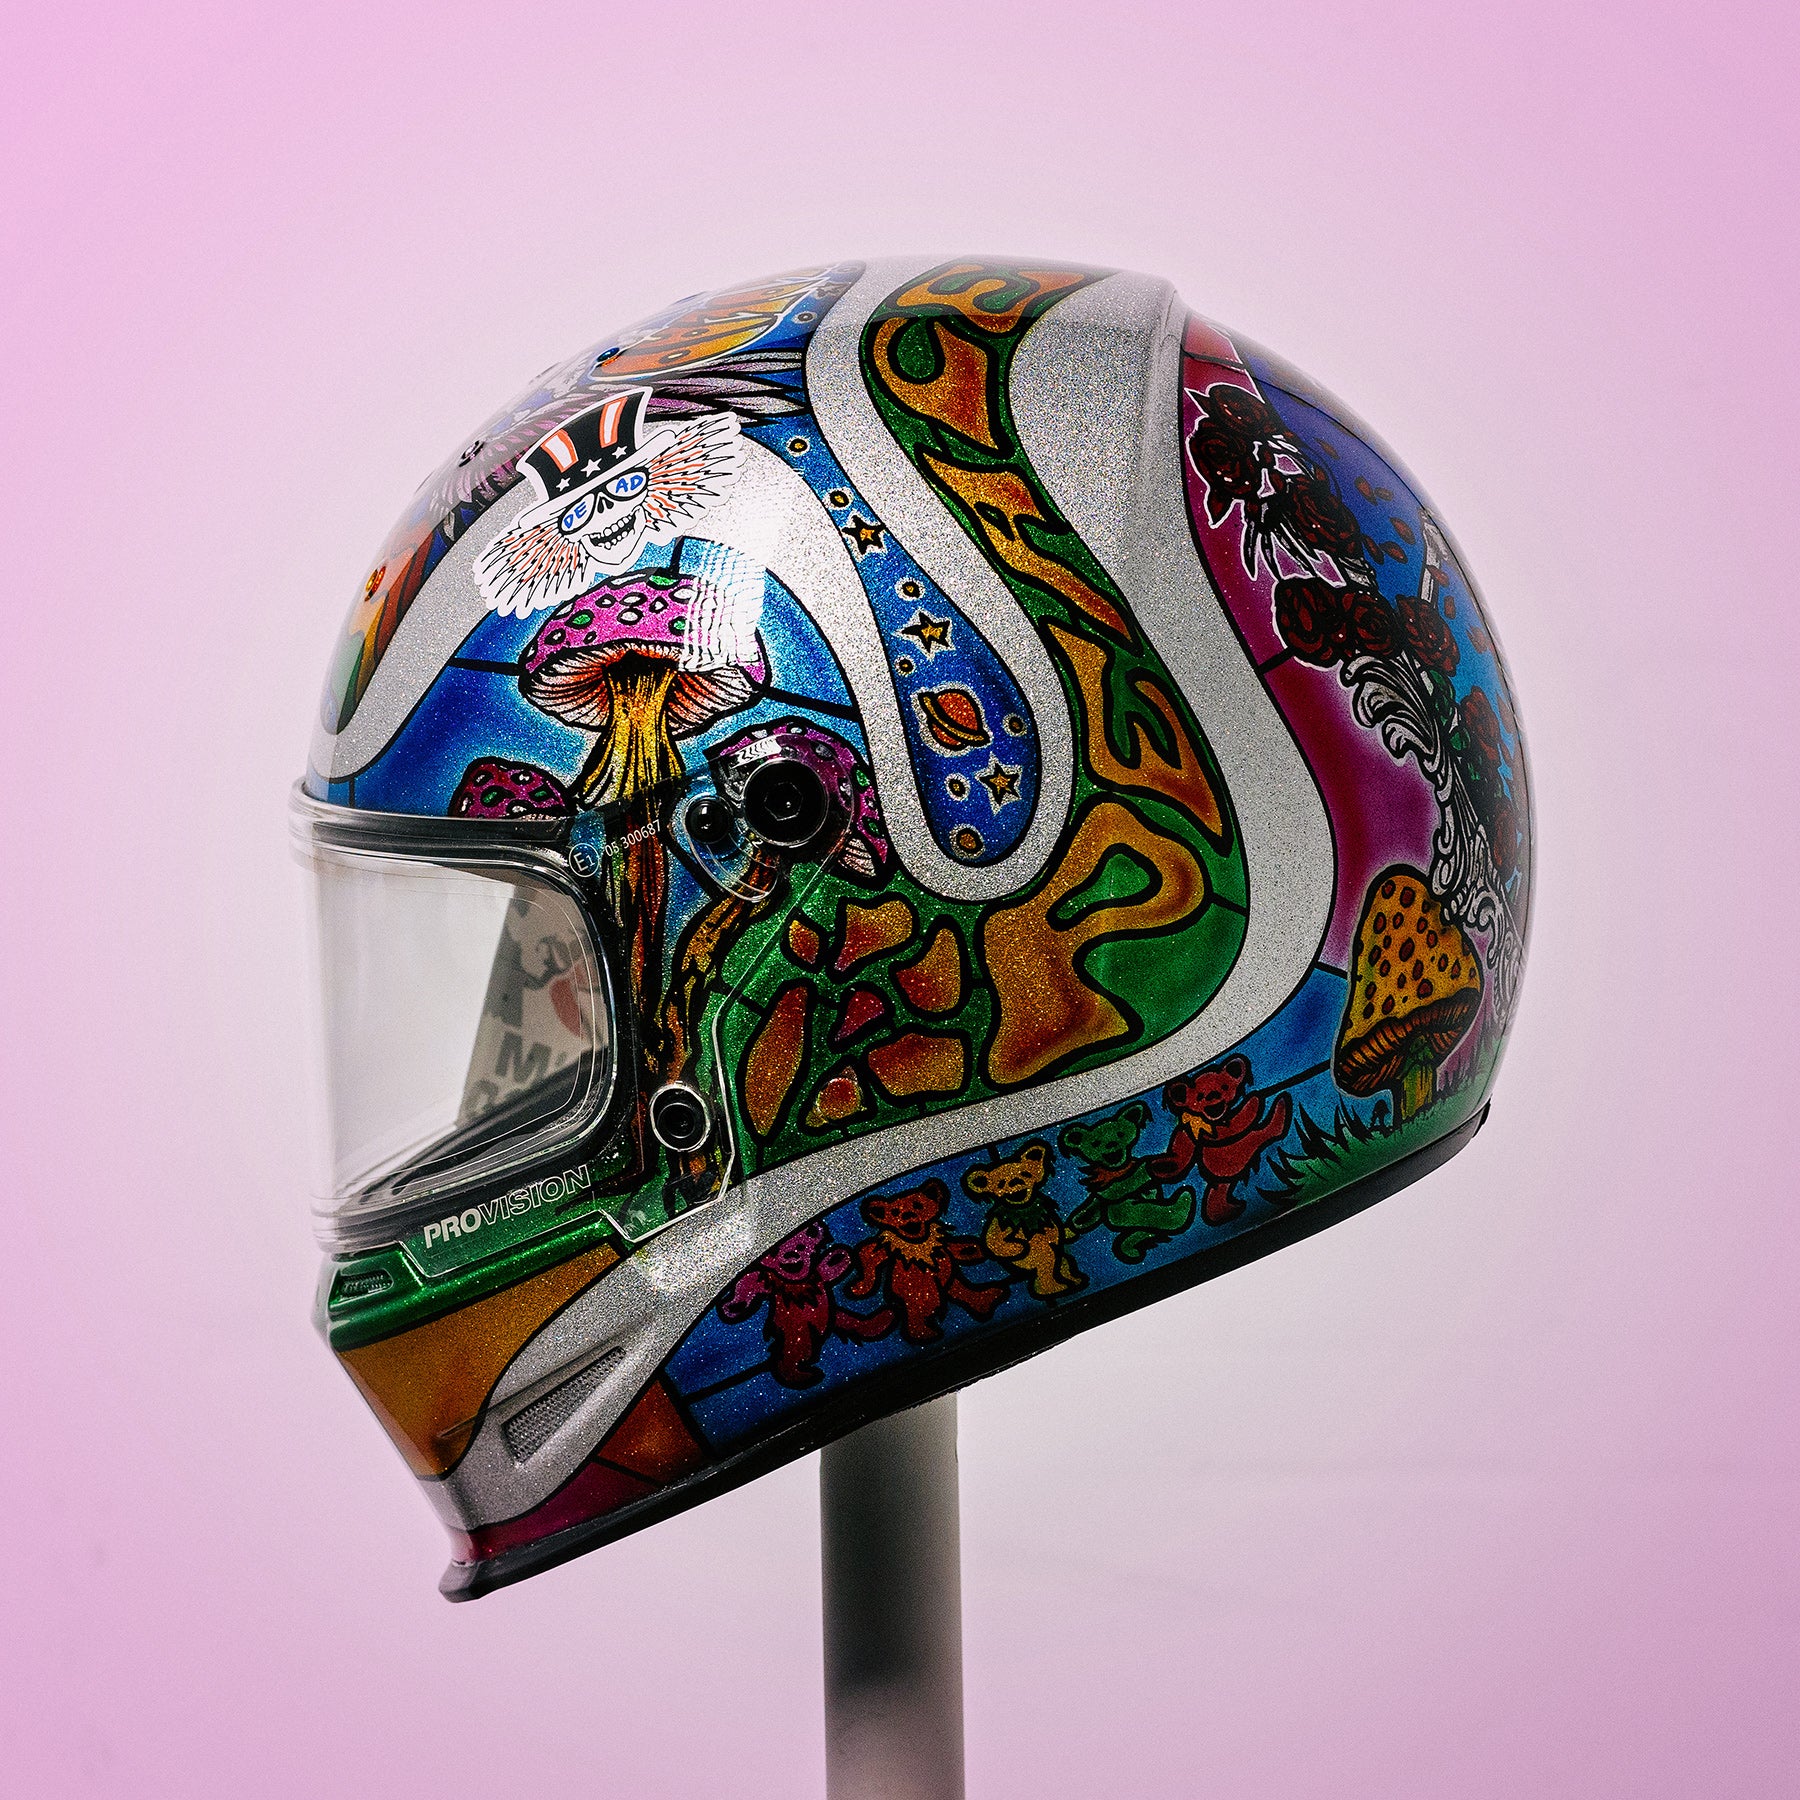 Trippy Ten Helmet Art Show Pittsburgh Franny Drummond Paint Zoo Studios